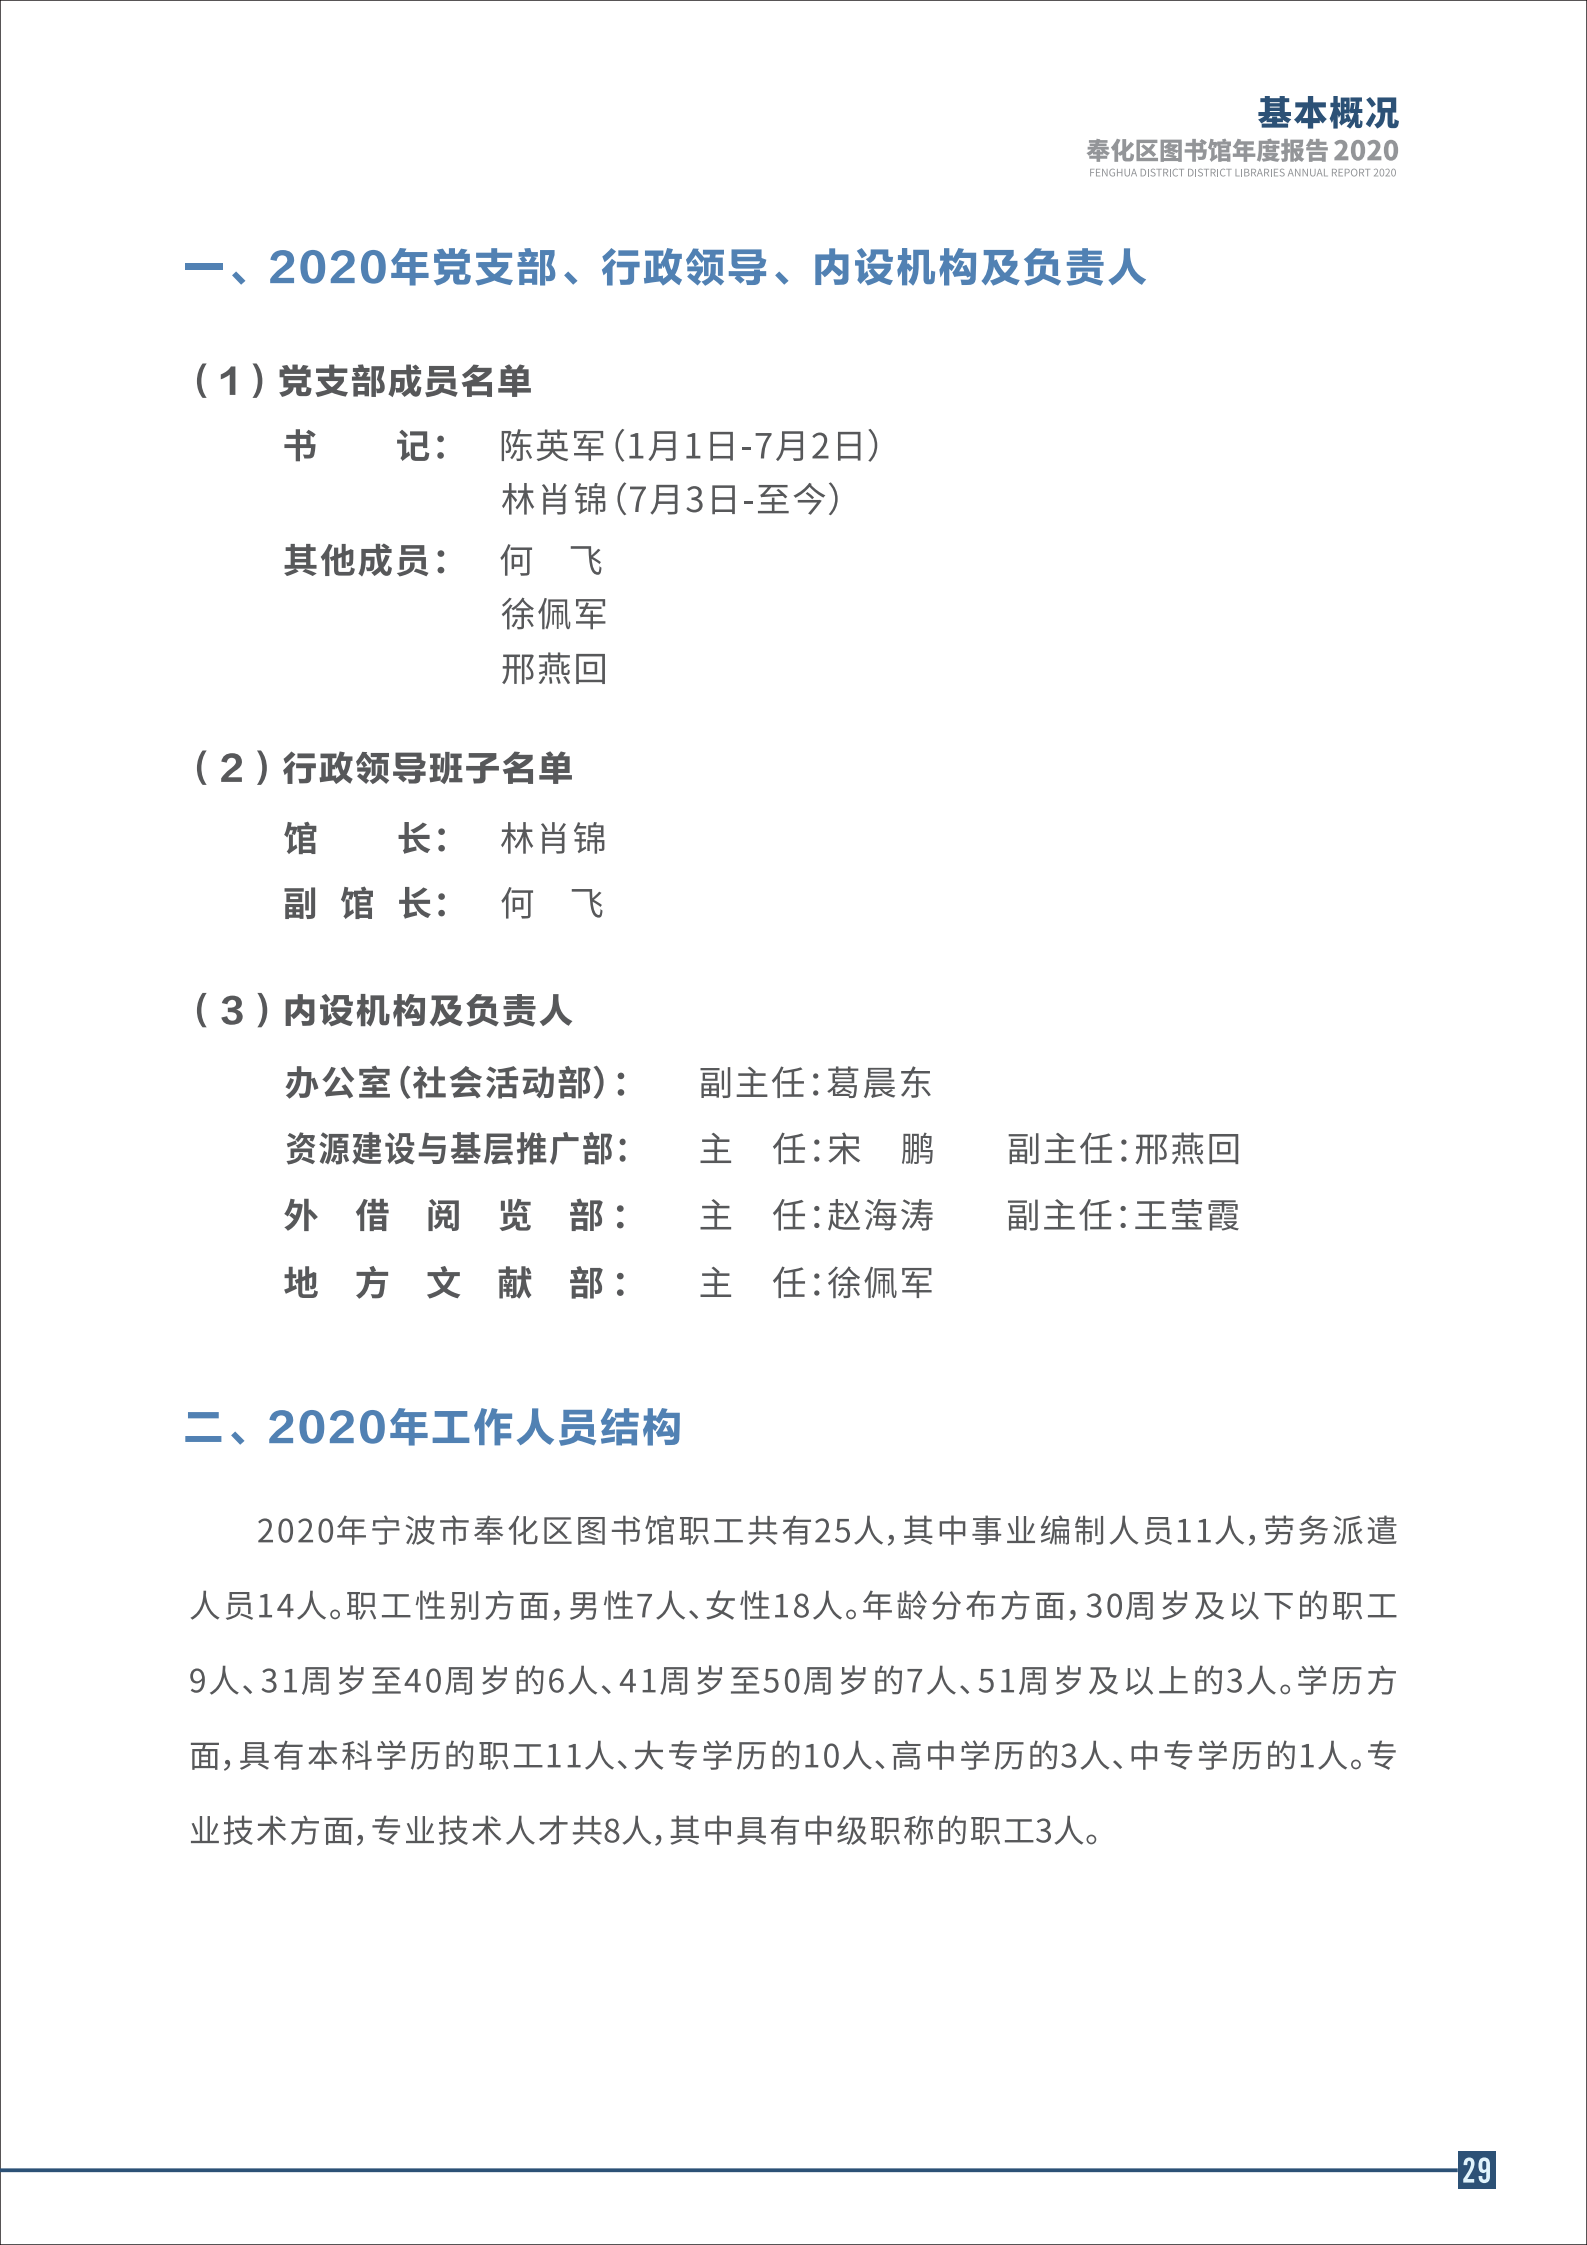 宁波市奉化区图书馆2020年年度报告 终稿_29.png